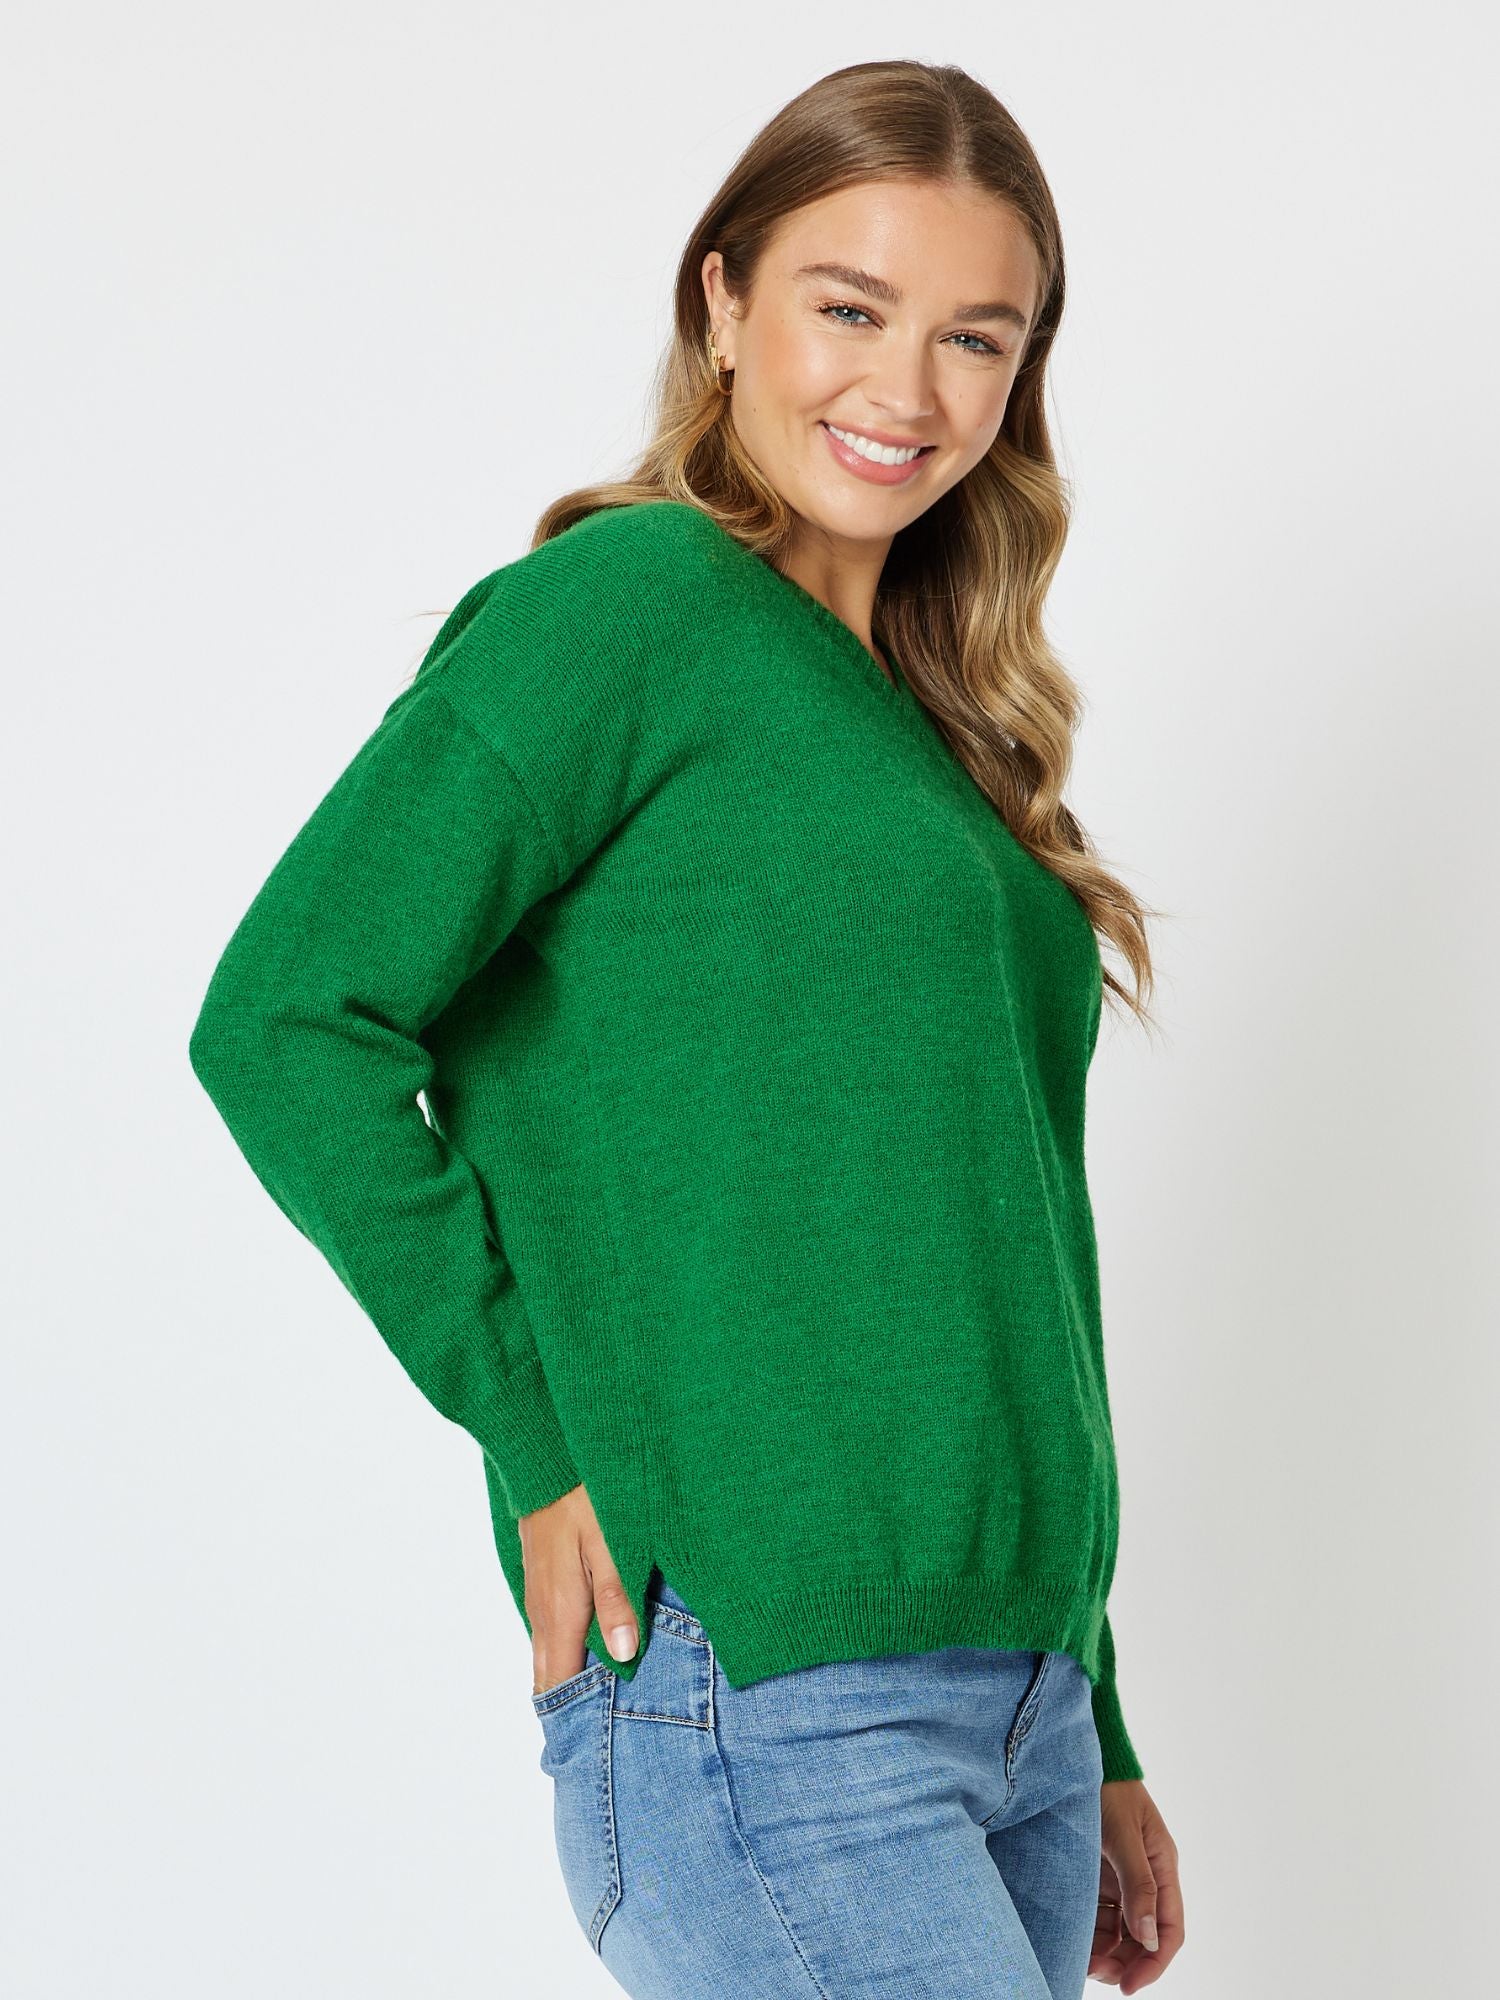 Valerie V neck Knit Top Jumper - Emerald